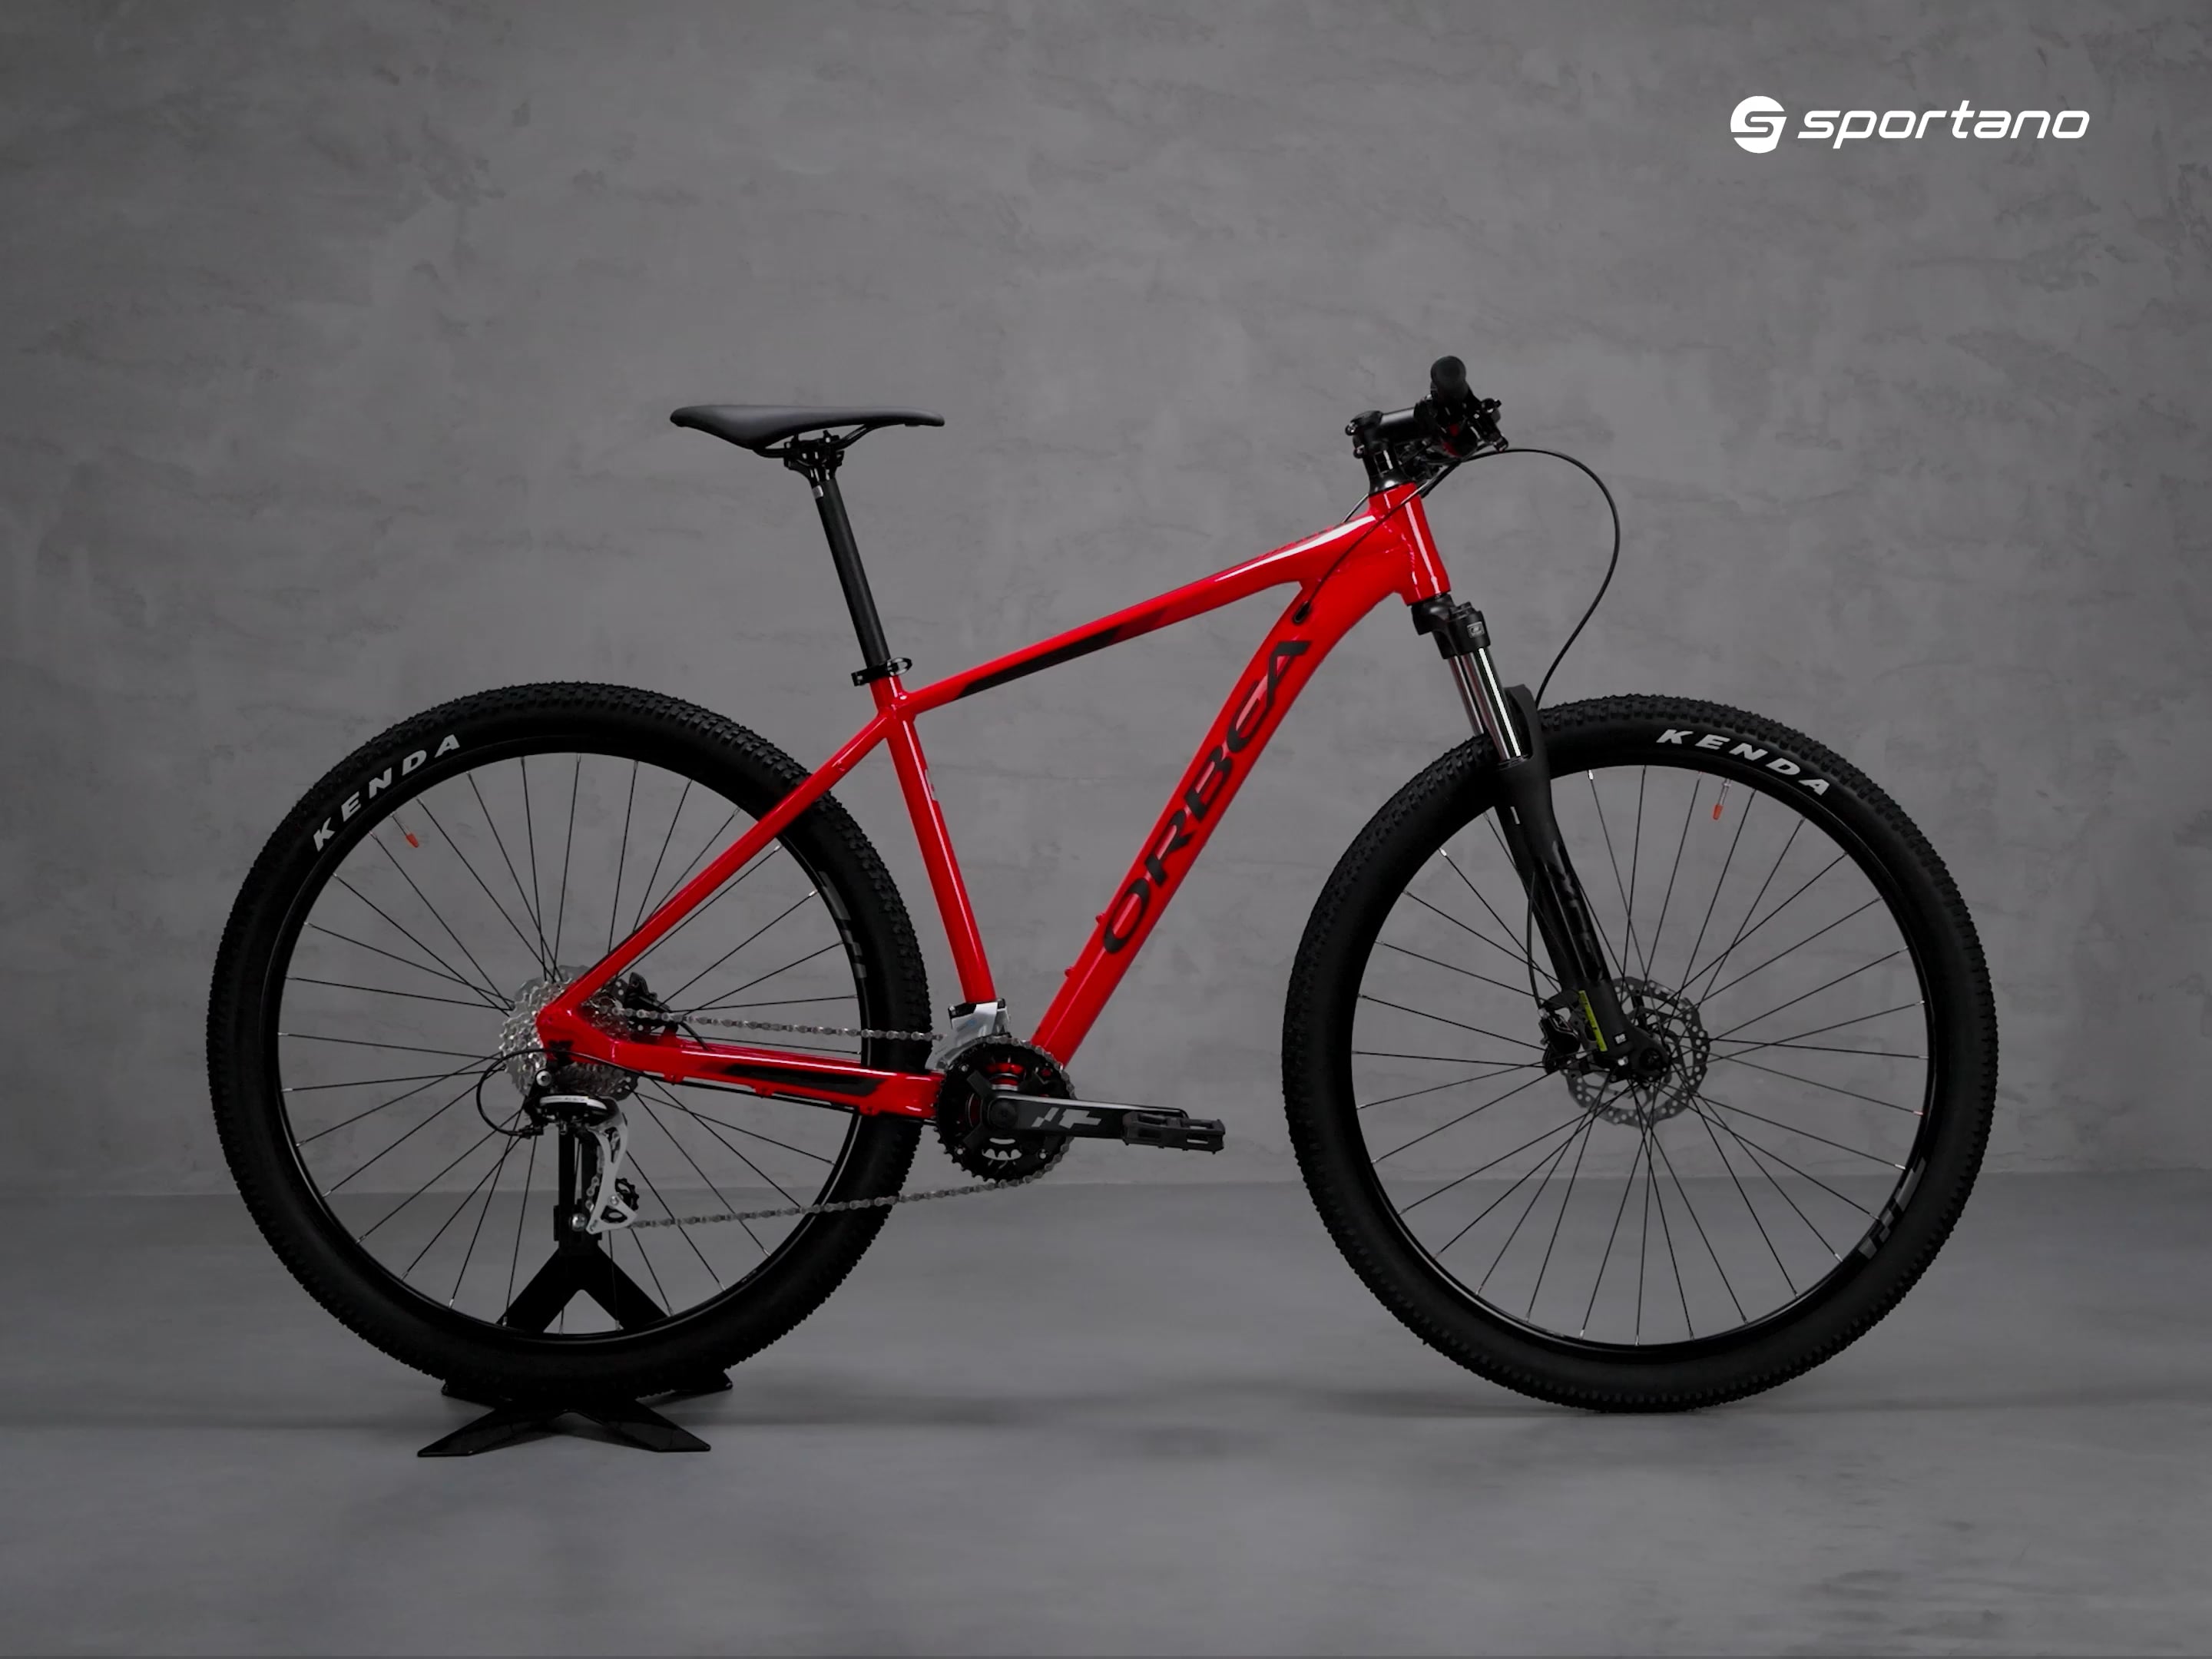 Orbea MX 29 50 hegyi kerékpár piros